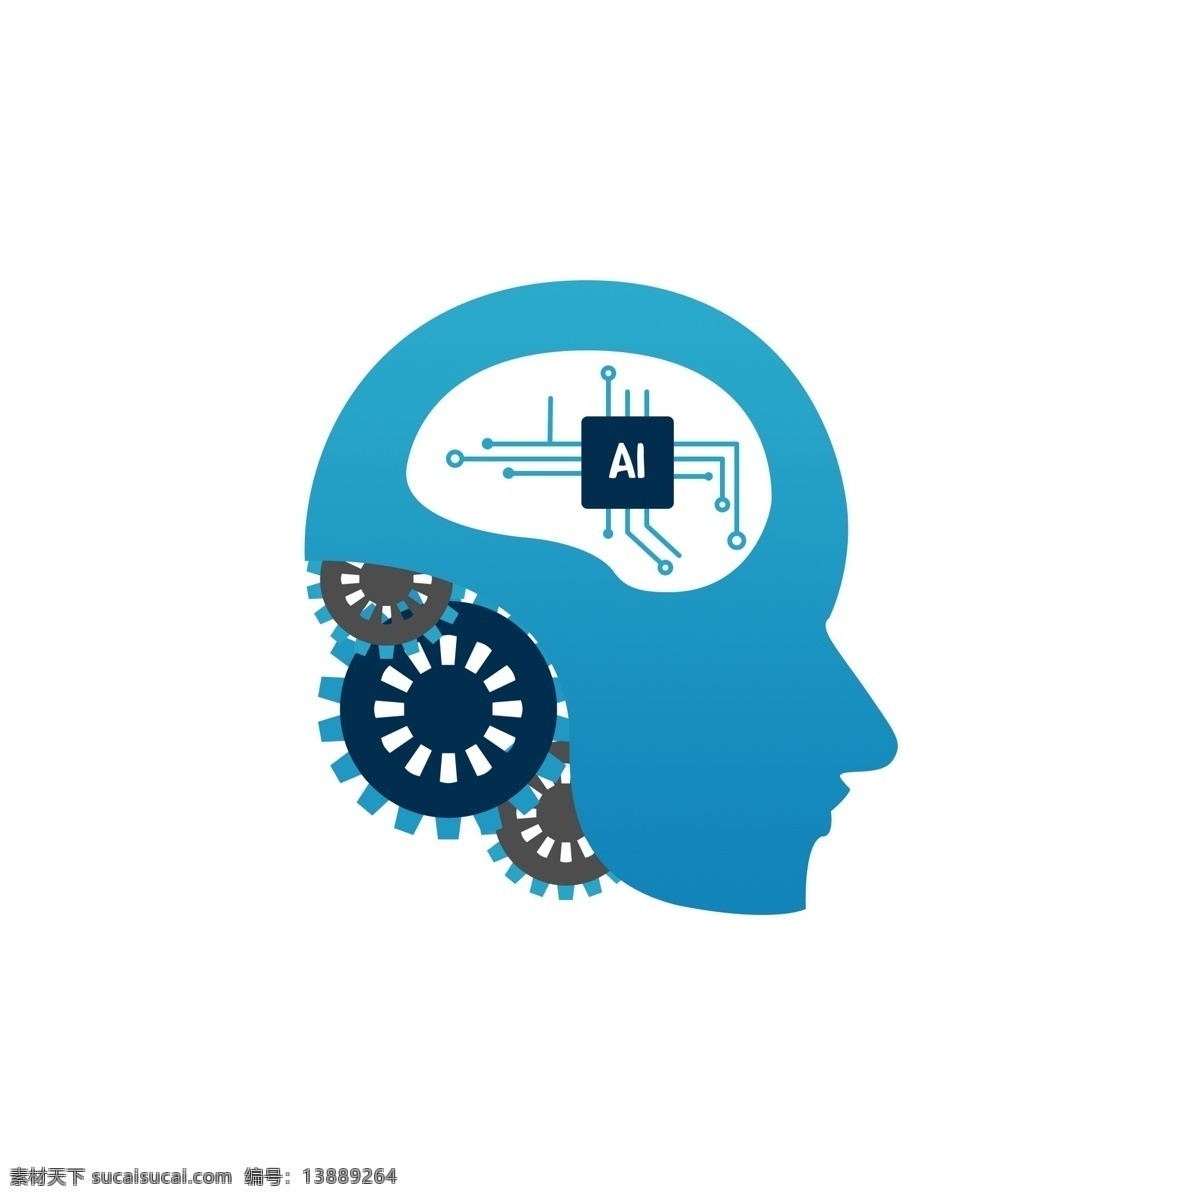 人工智能 蓝色 科技 机械 齿轮 大脑 商用